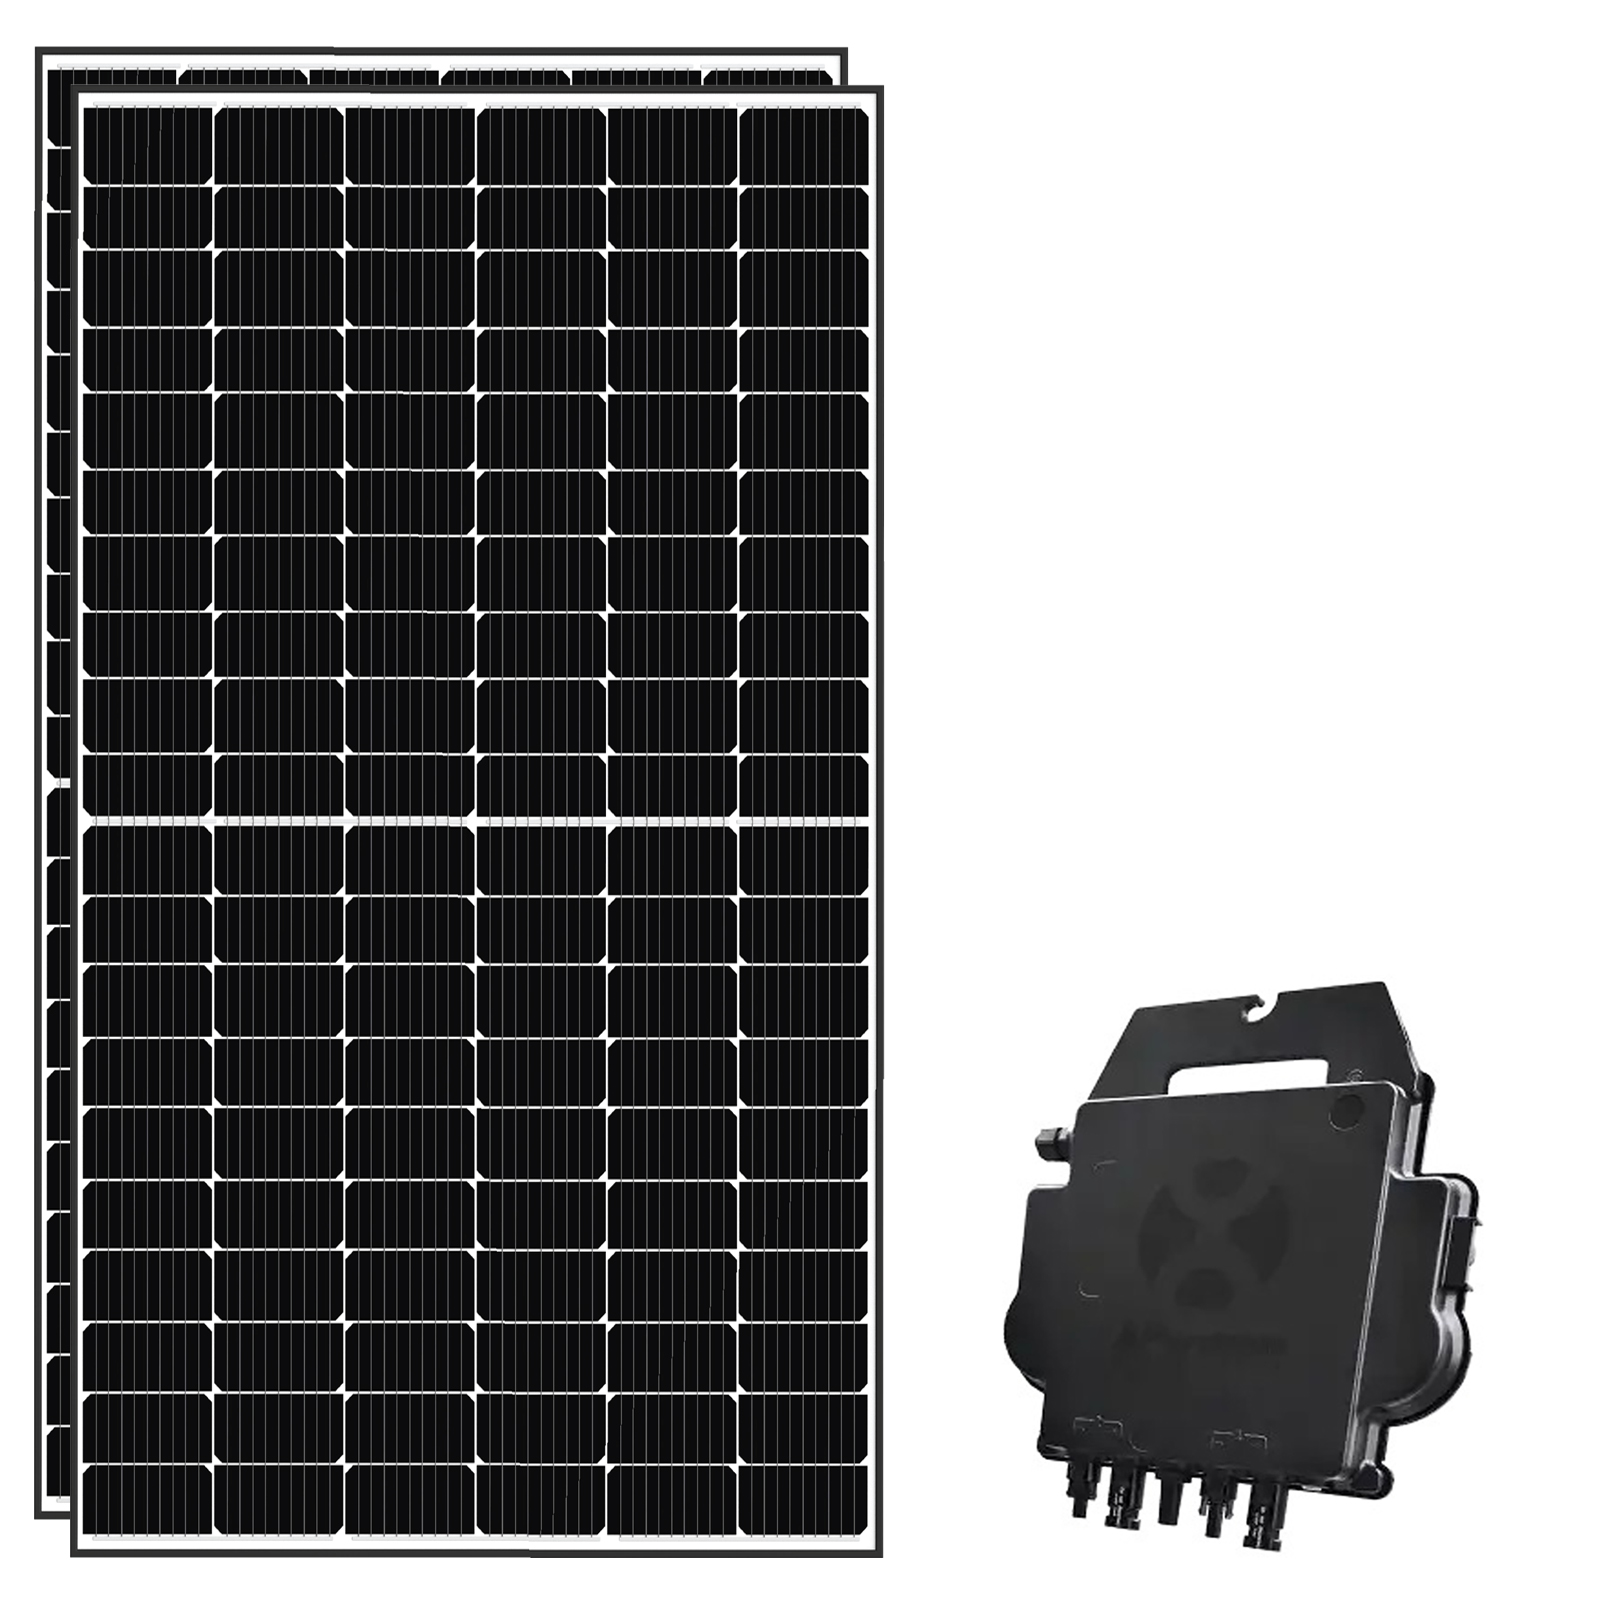 Solar-PV 760 Balkonkraftwerke Komplettset – Mit EPP Solarmodul und Deye Sun600 Wechselrichter